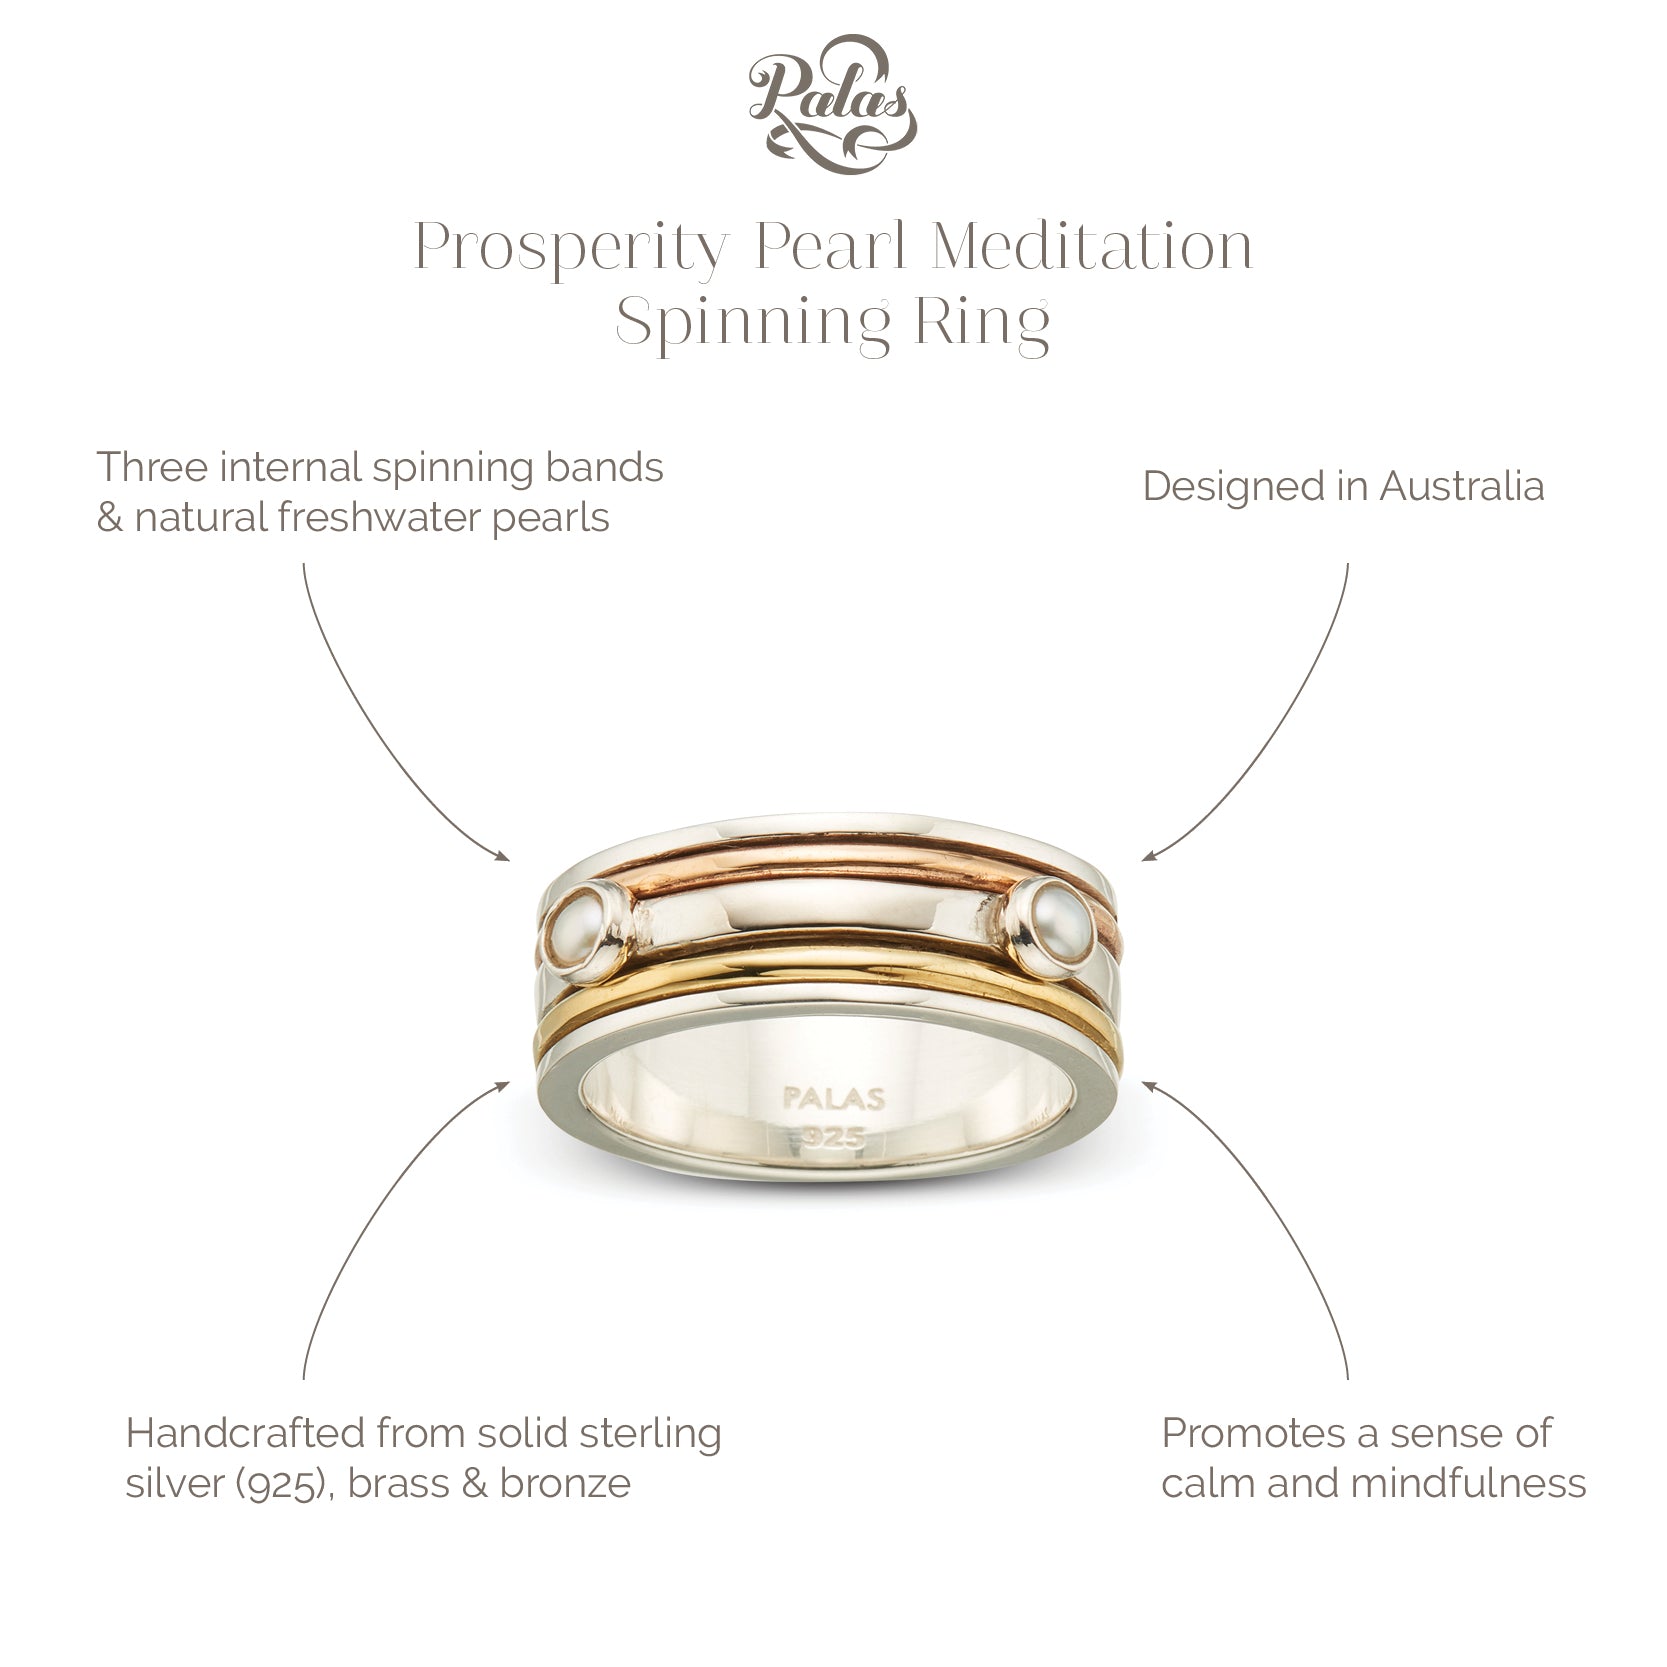 Prosperity pearl meditation spinning ring